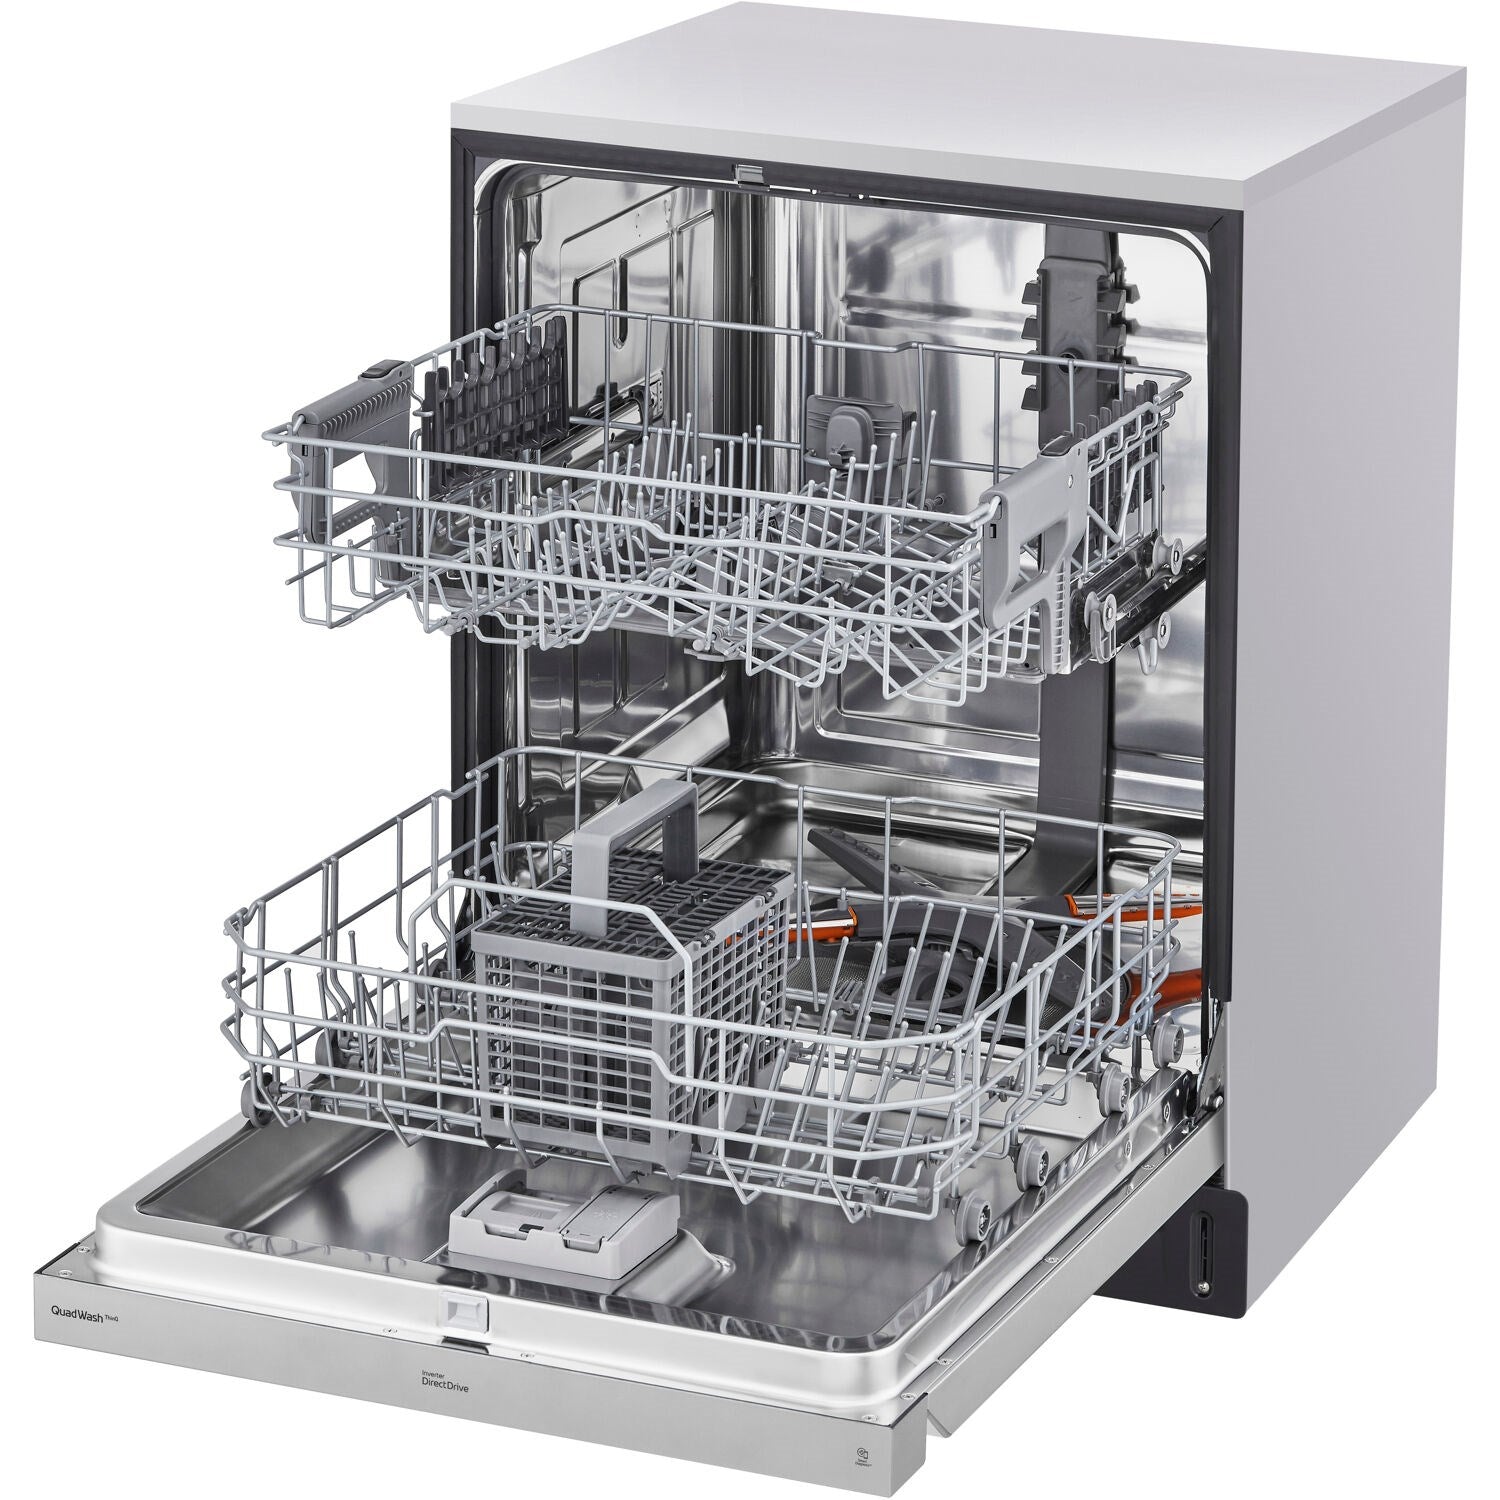 LG - 24 inch Front Control Dishwasher w/ Pocket Handel, ADA Compliant, QuadWash